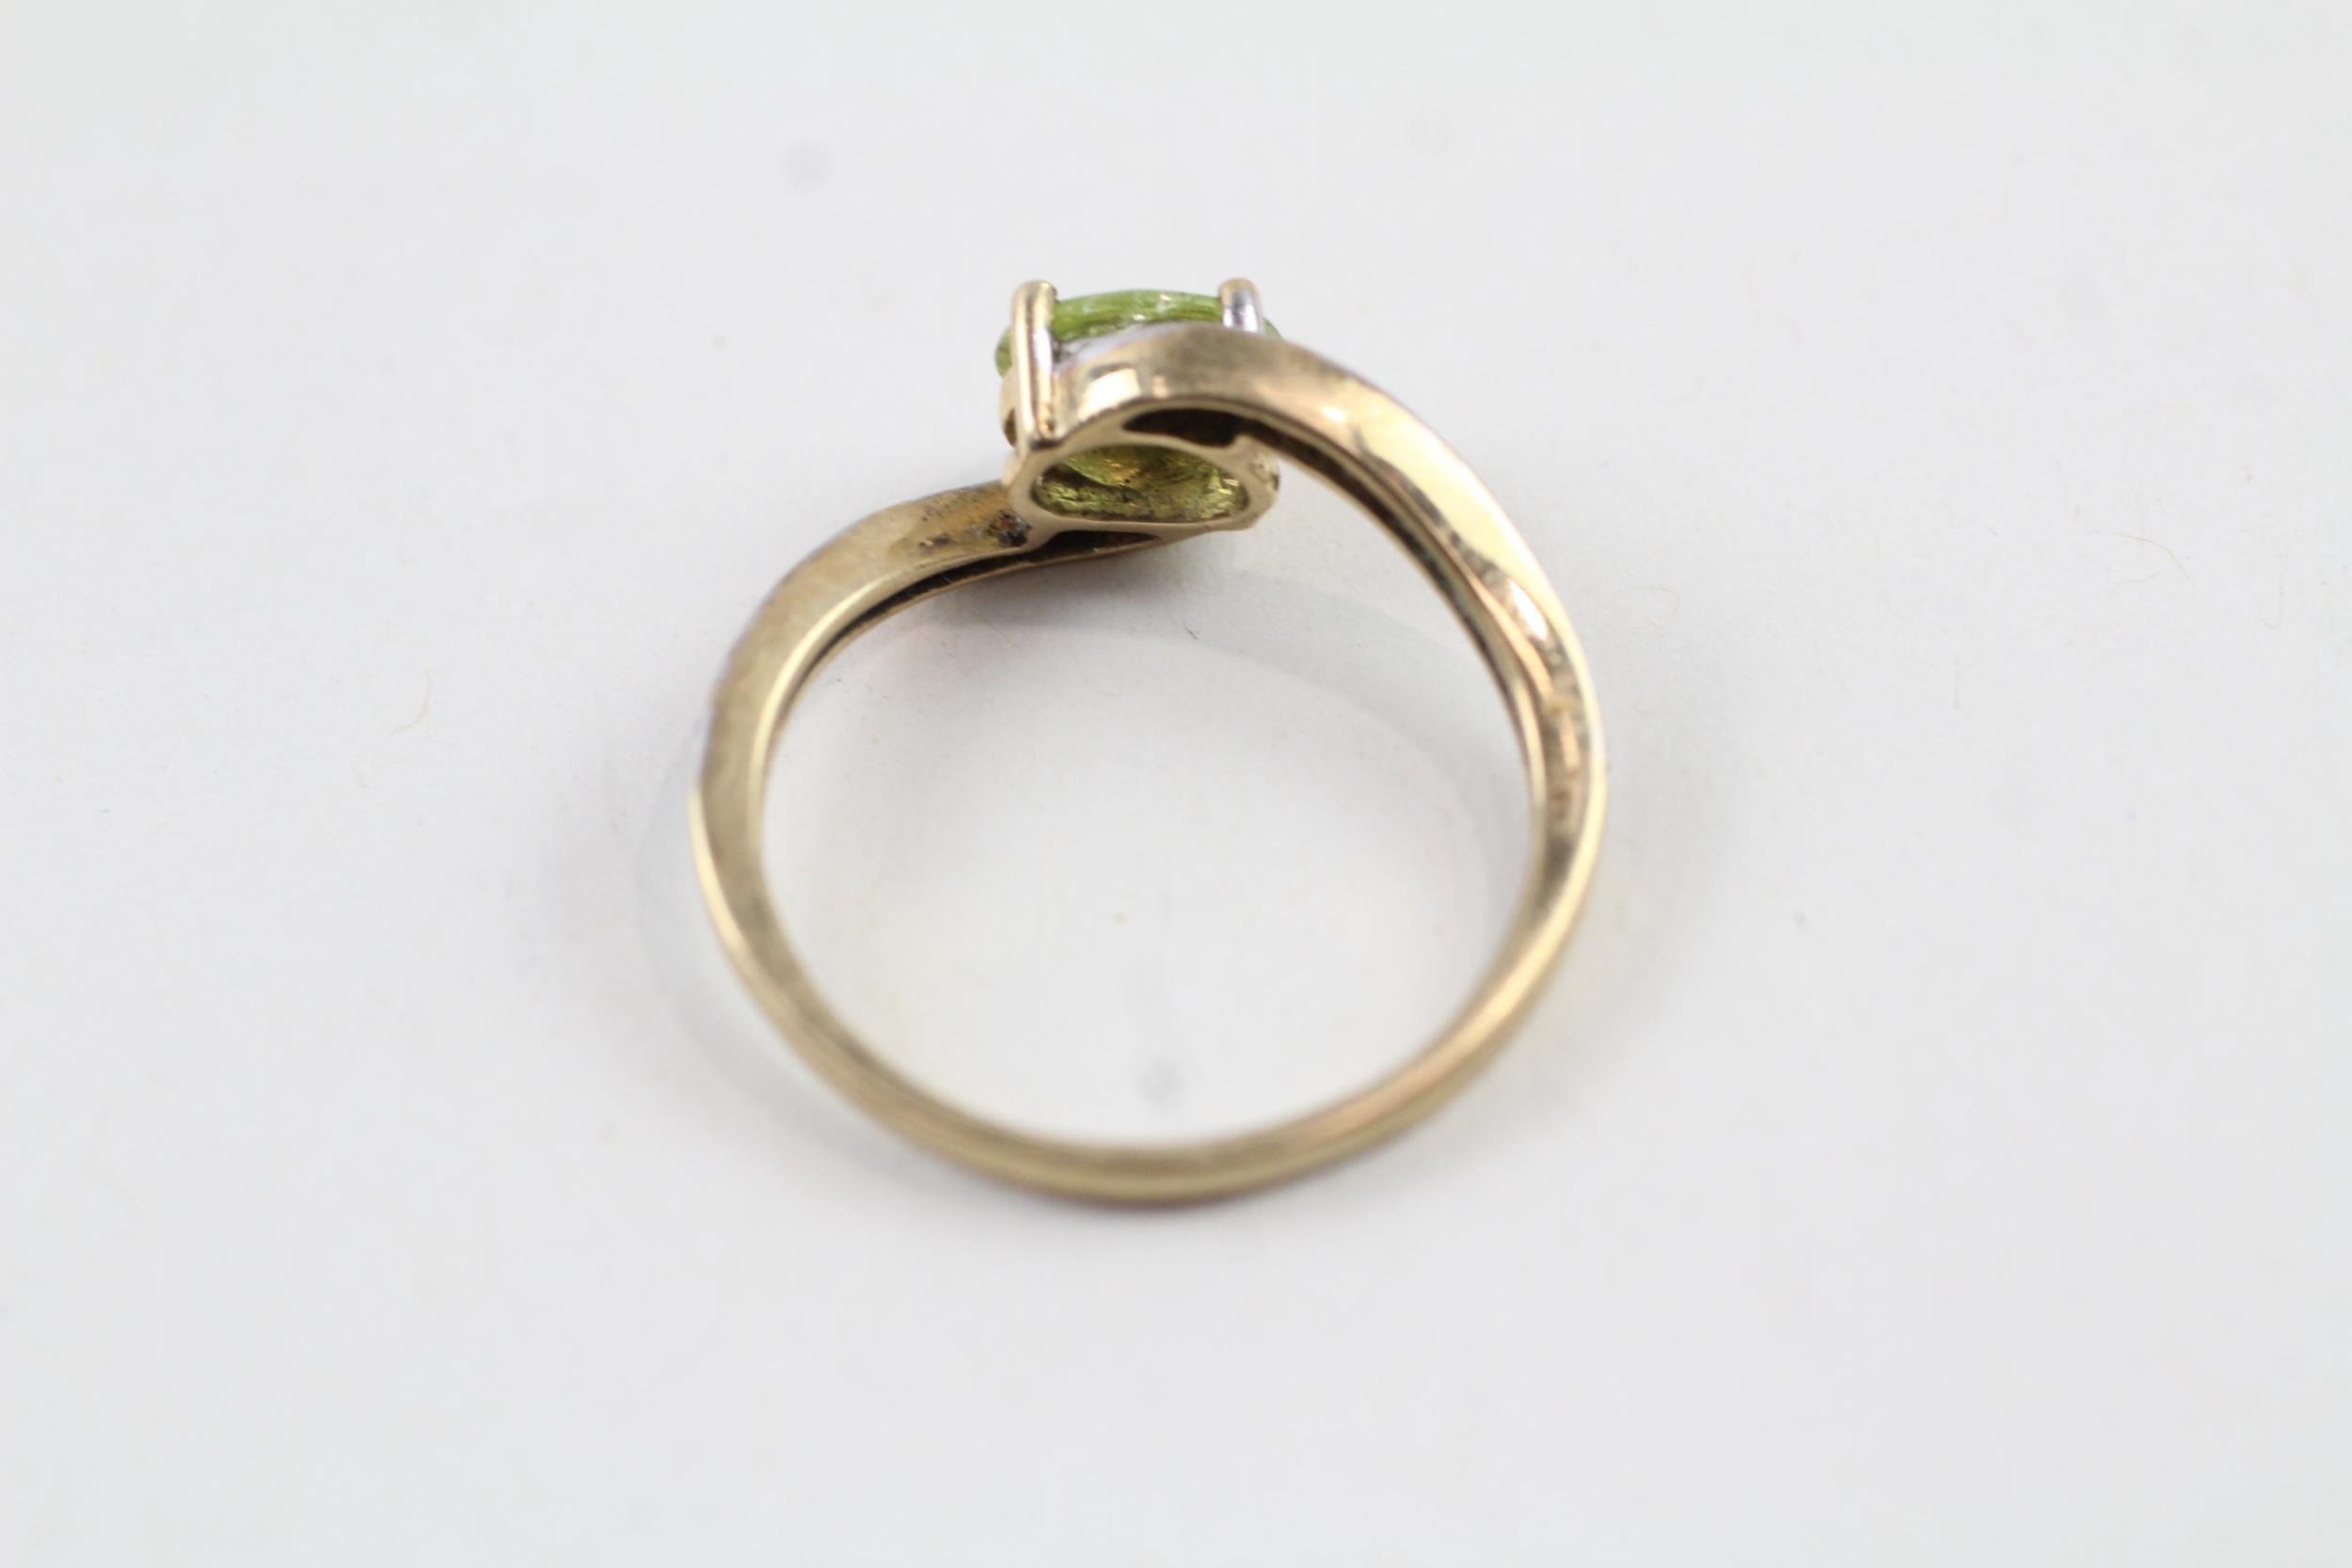 9ct gold oval cut peridot & diamond dress ring (2.3g) Size Q - Image 4 of 6